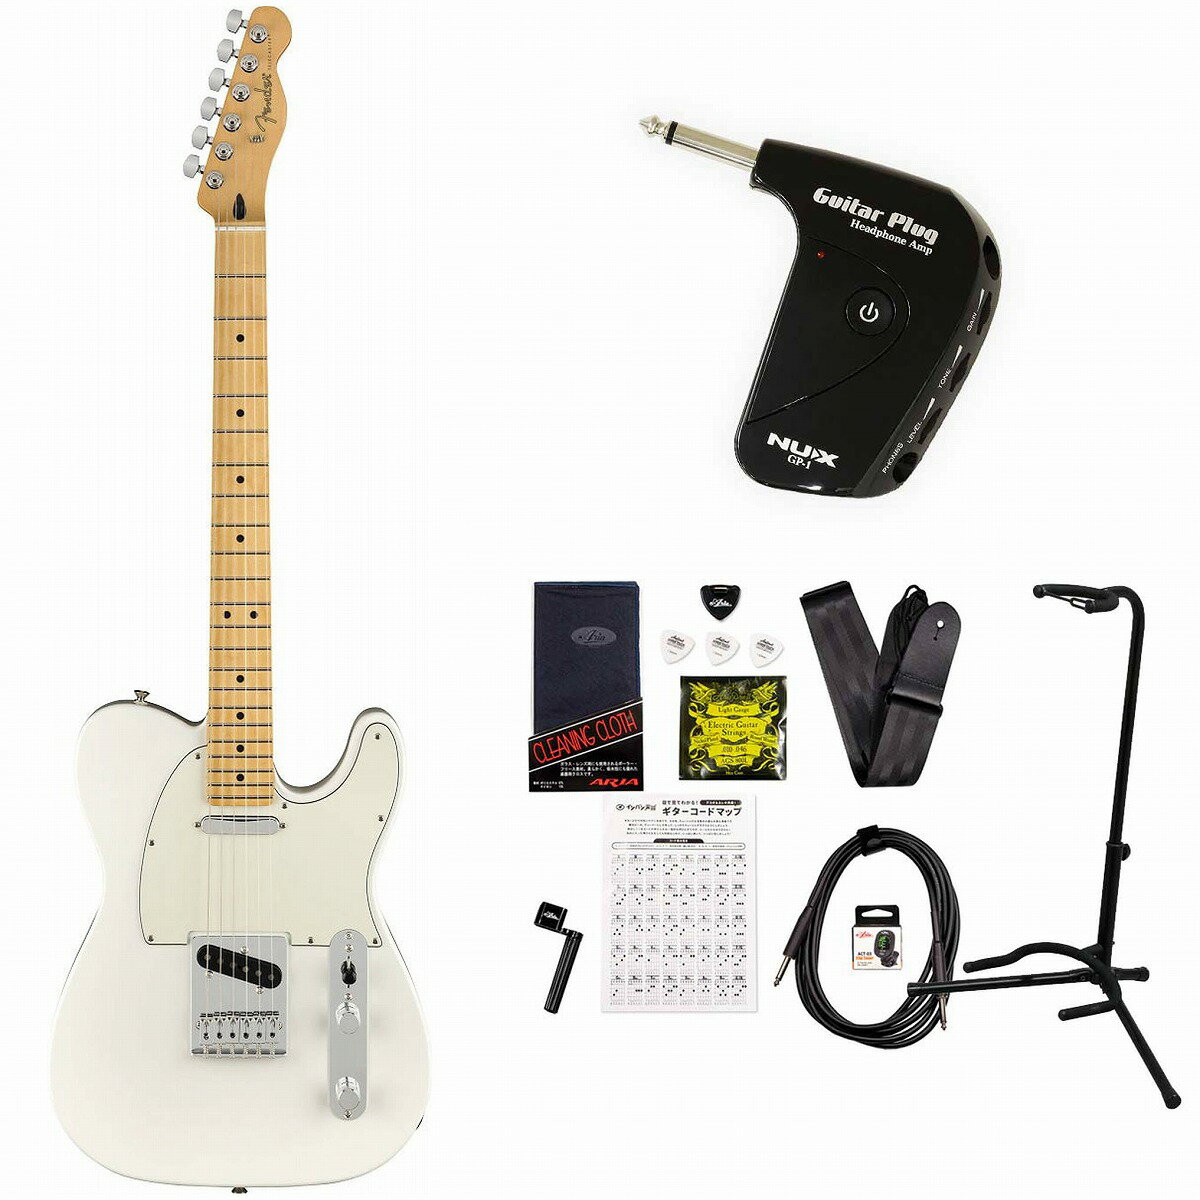 《限界突破特価!》Fender / Player Series Telecaster Polar White Maple GP-1アンプ付属エレキギター初心者セット《+4582600680067》